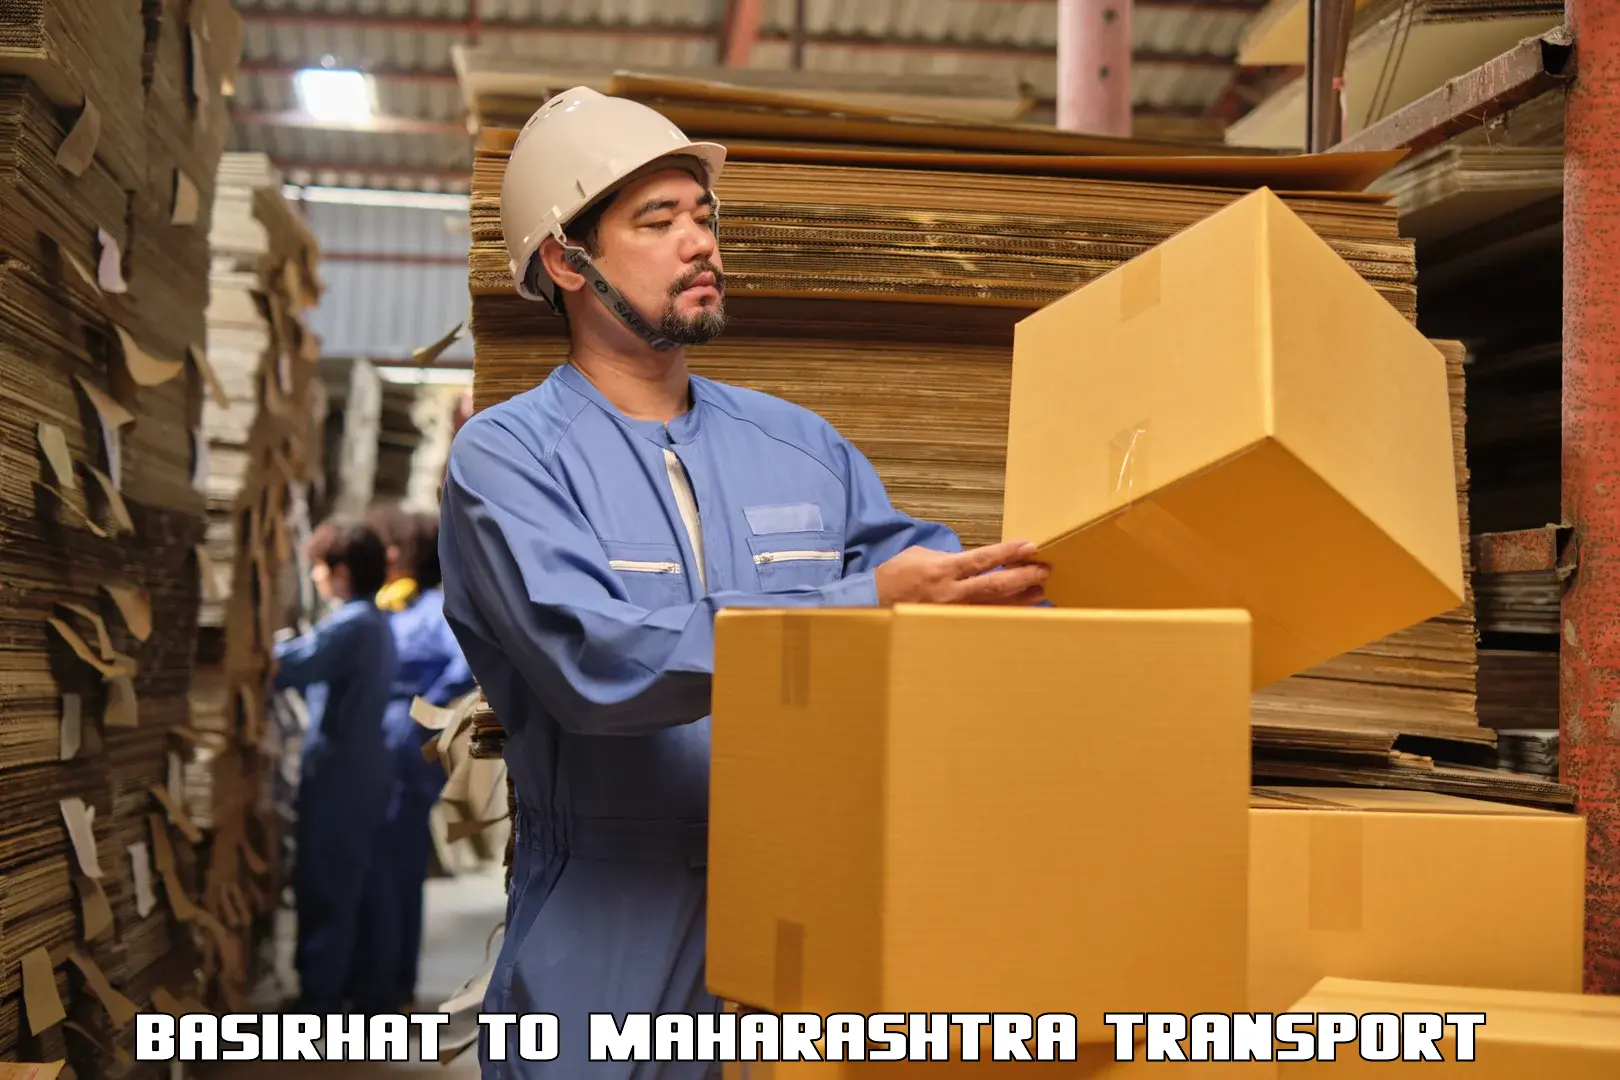 Furniture transport service Basirhat to Mumbai Port